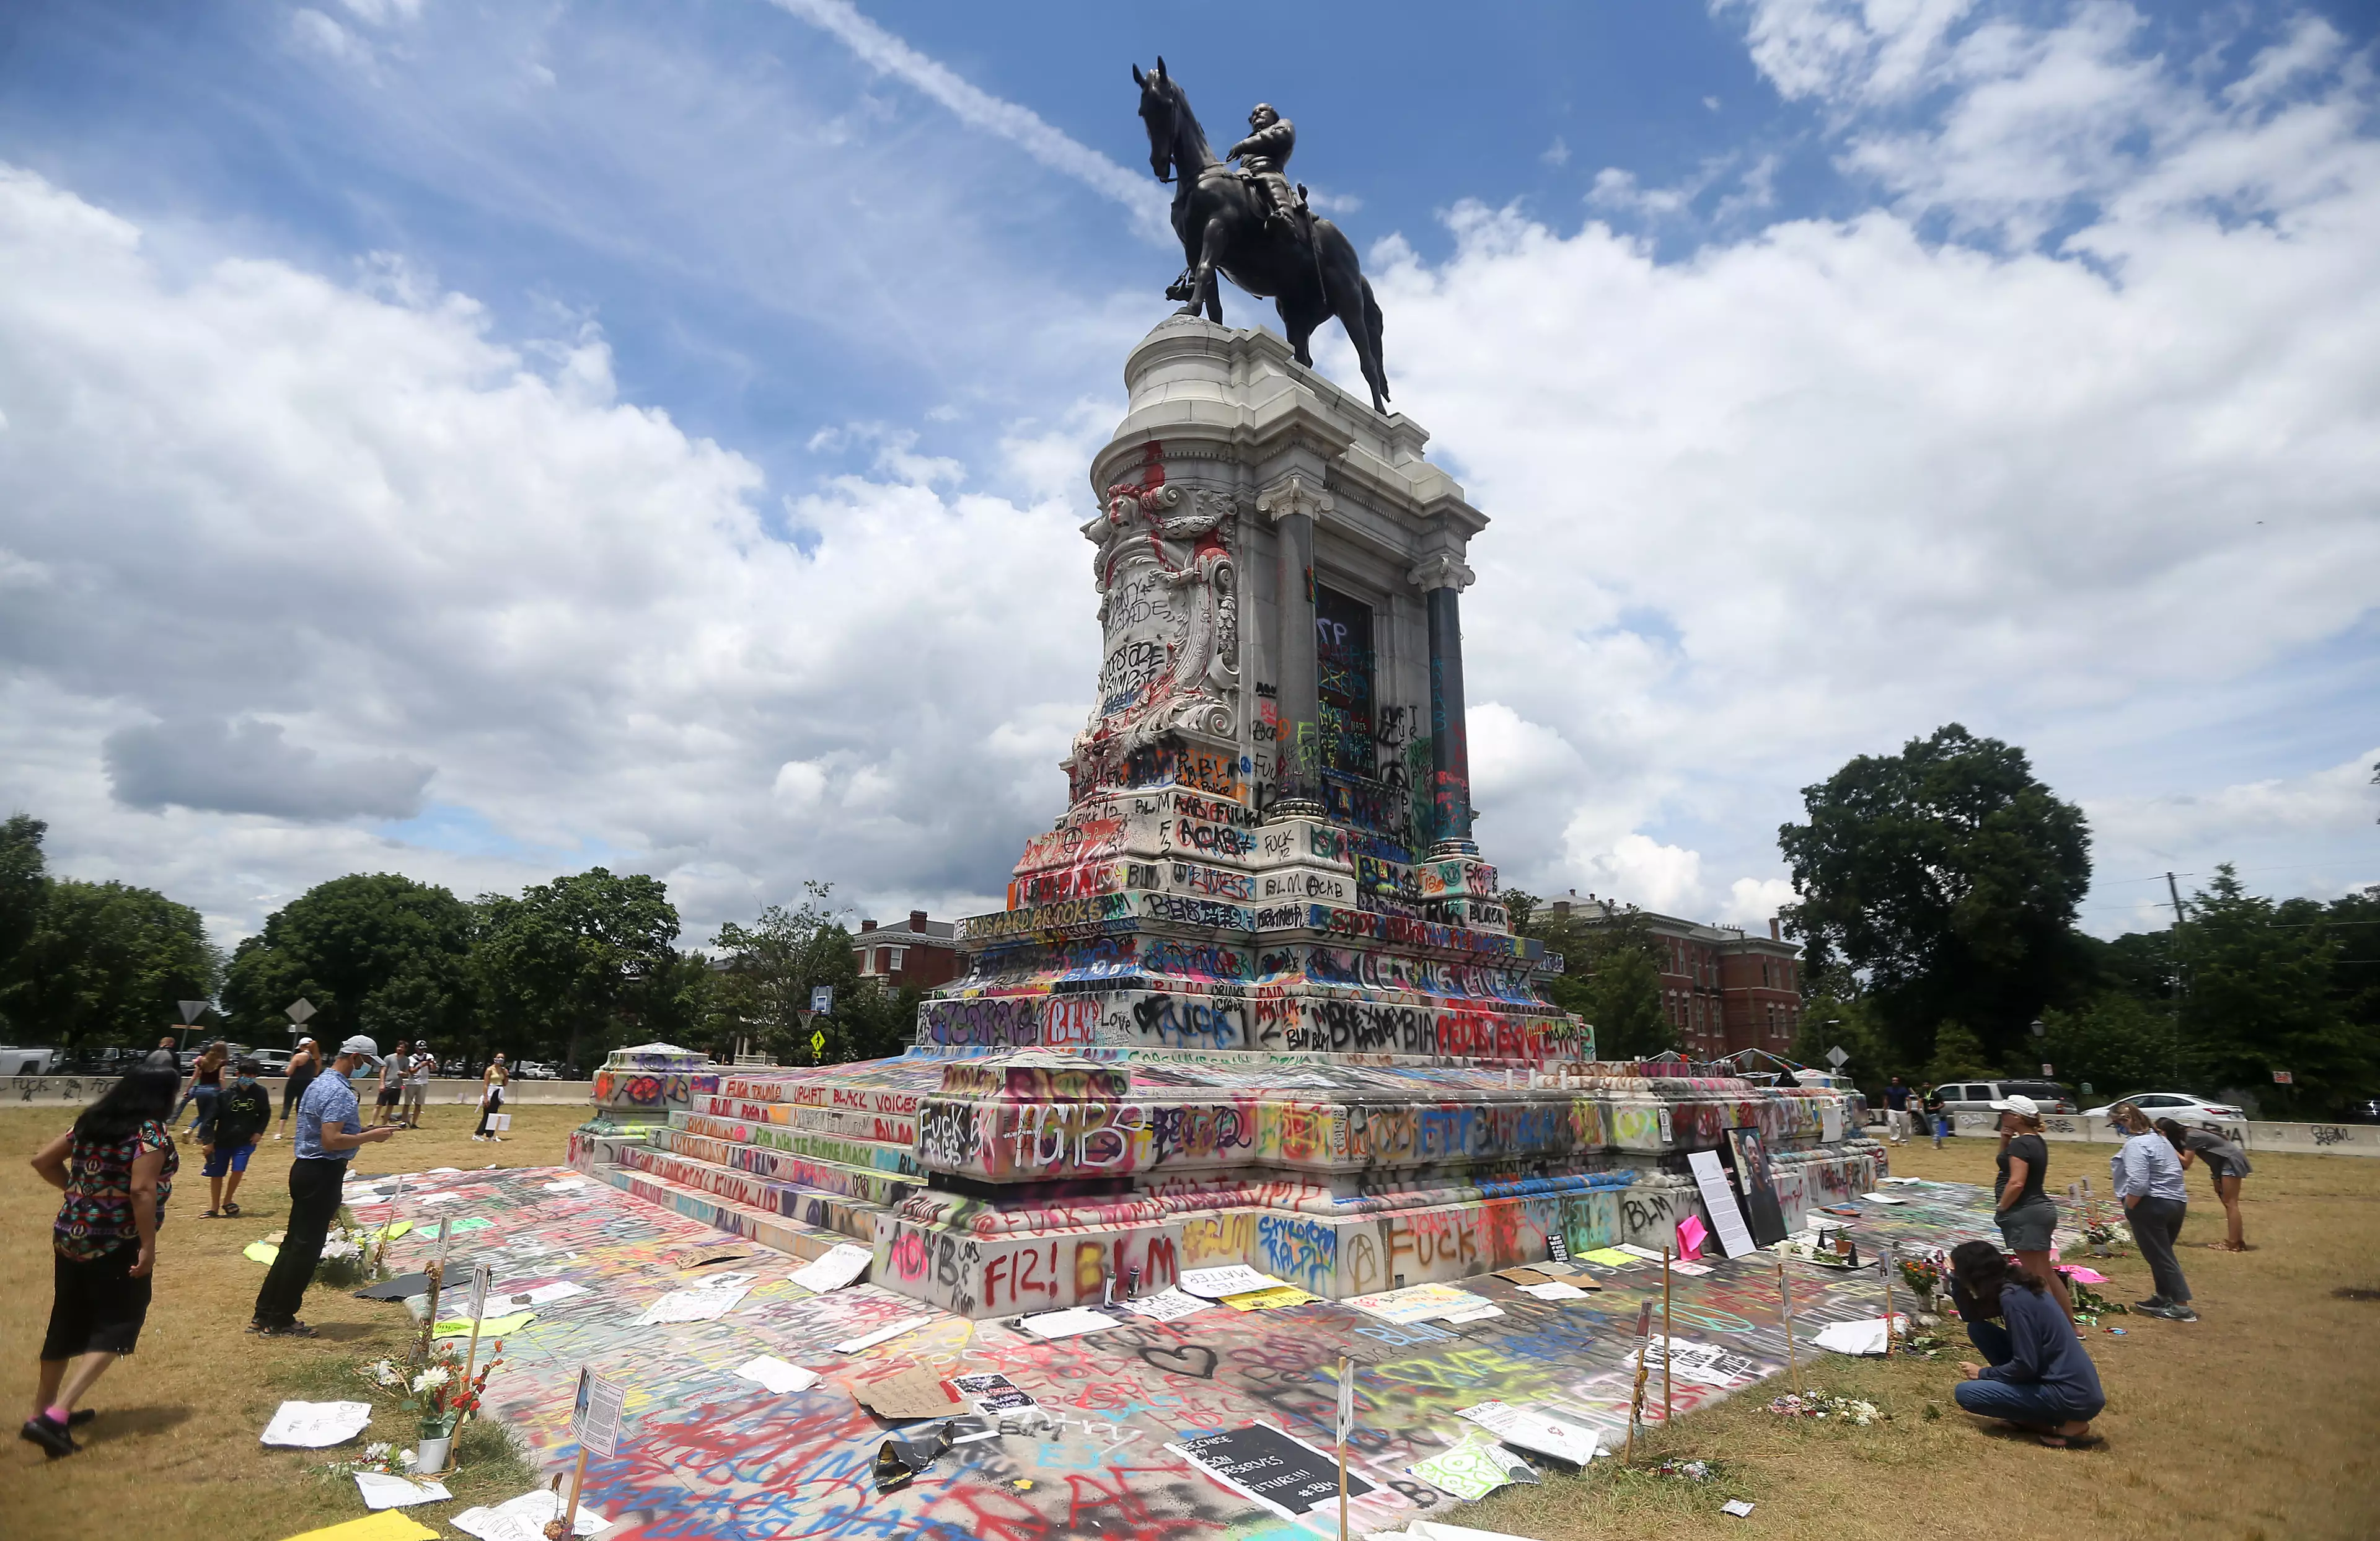 Vandalised Robert E. Lee statue in Virginia.